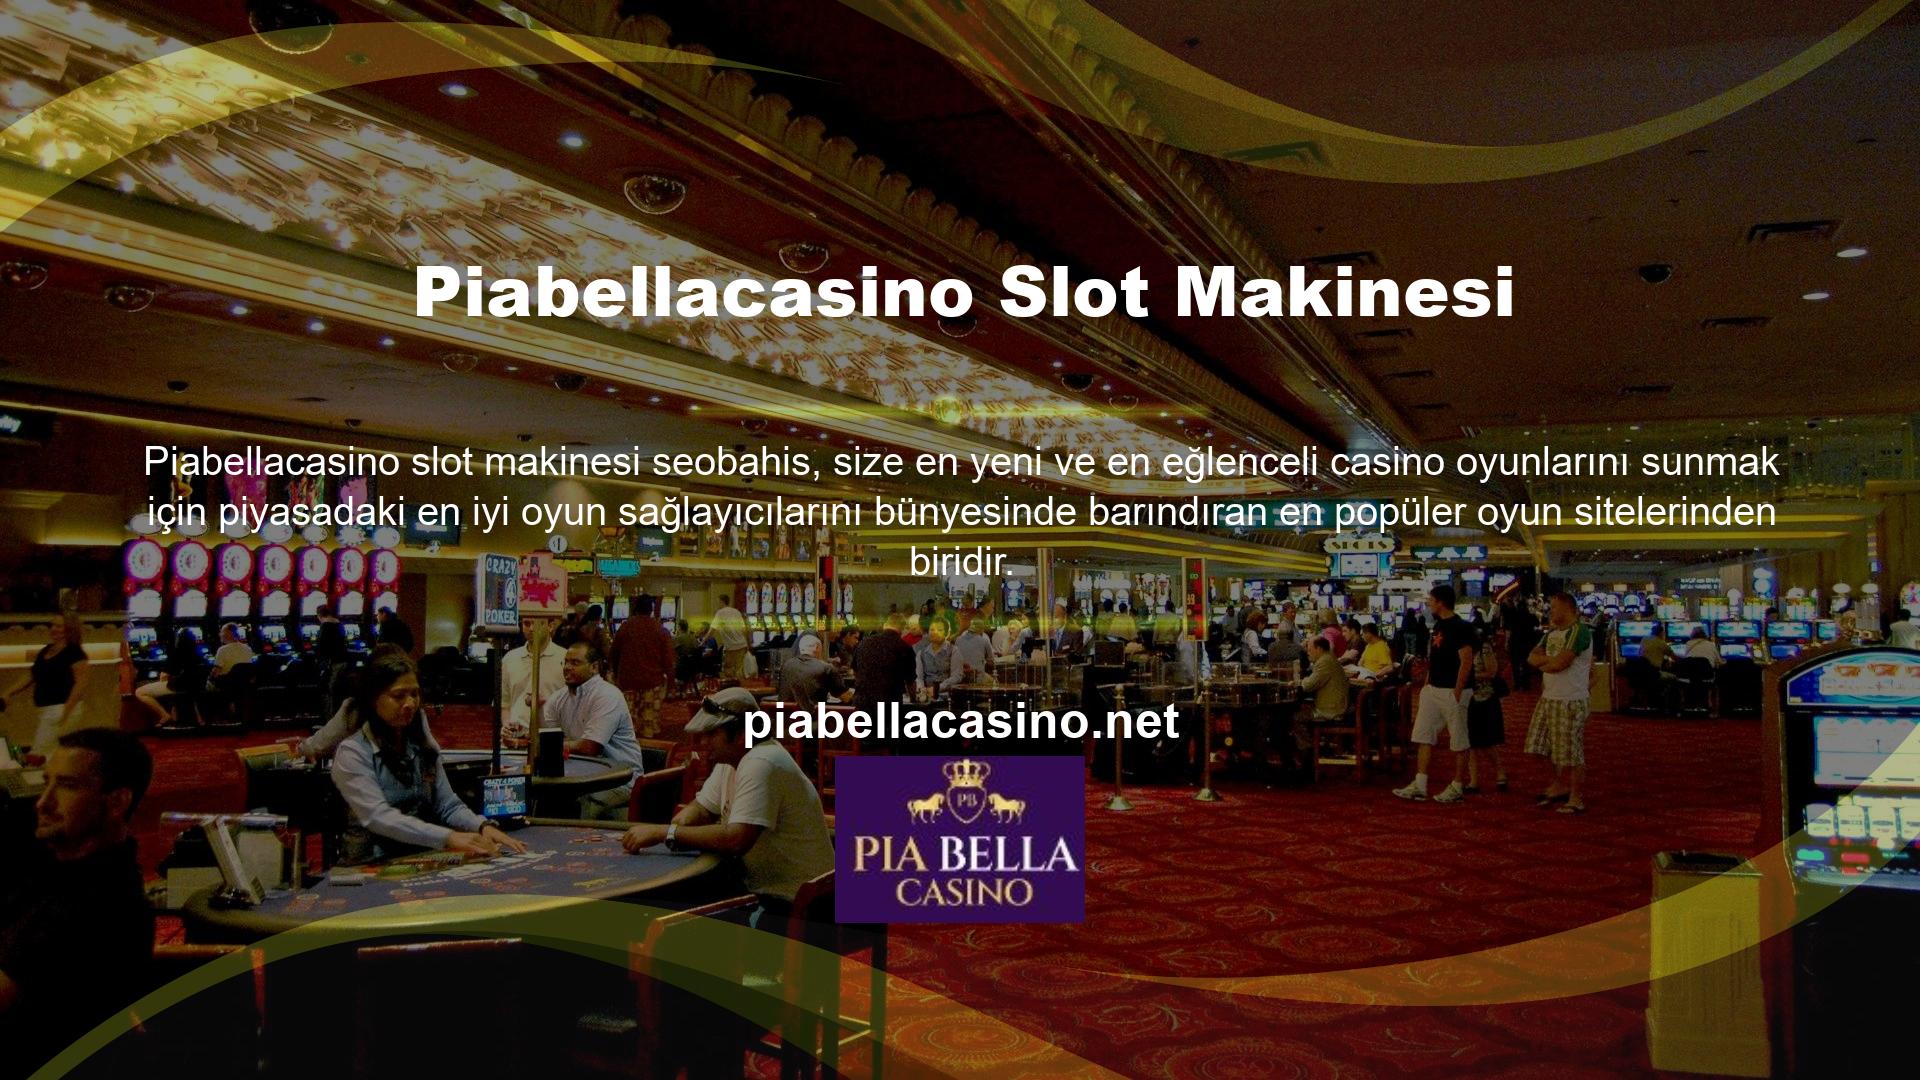 Piabellacasino Slot Casino'da oynadığınız tüm oyunların lisanslı oyun sağlayıcılar tarafından sağlandığını bilmelisiniz